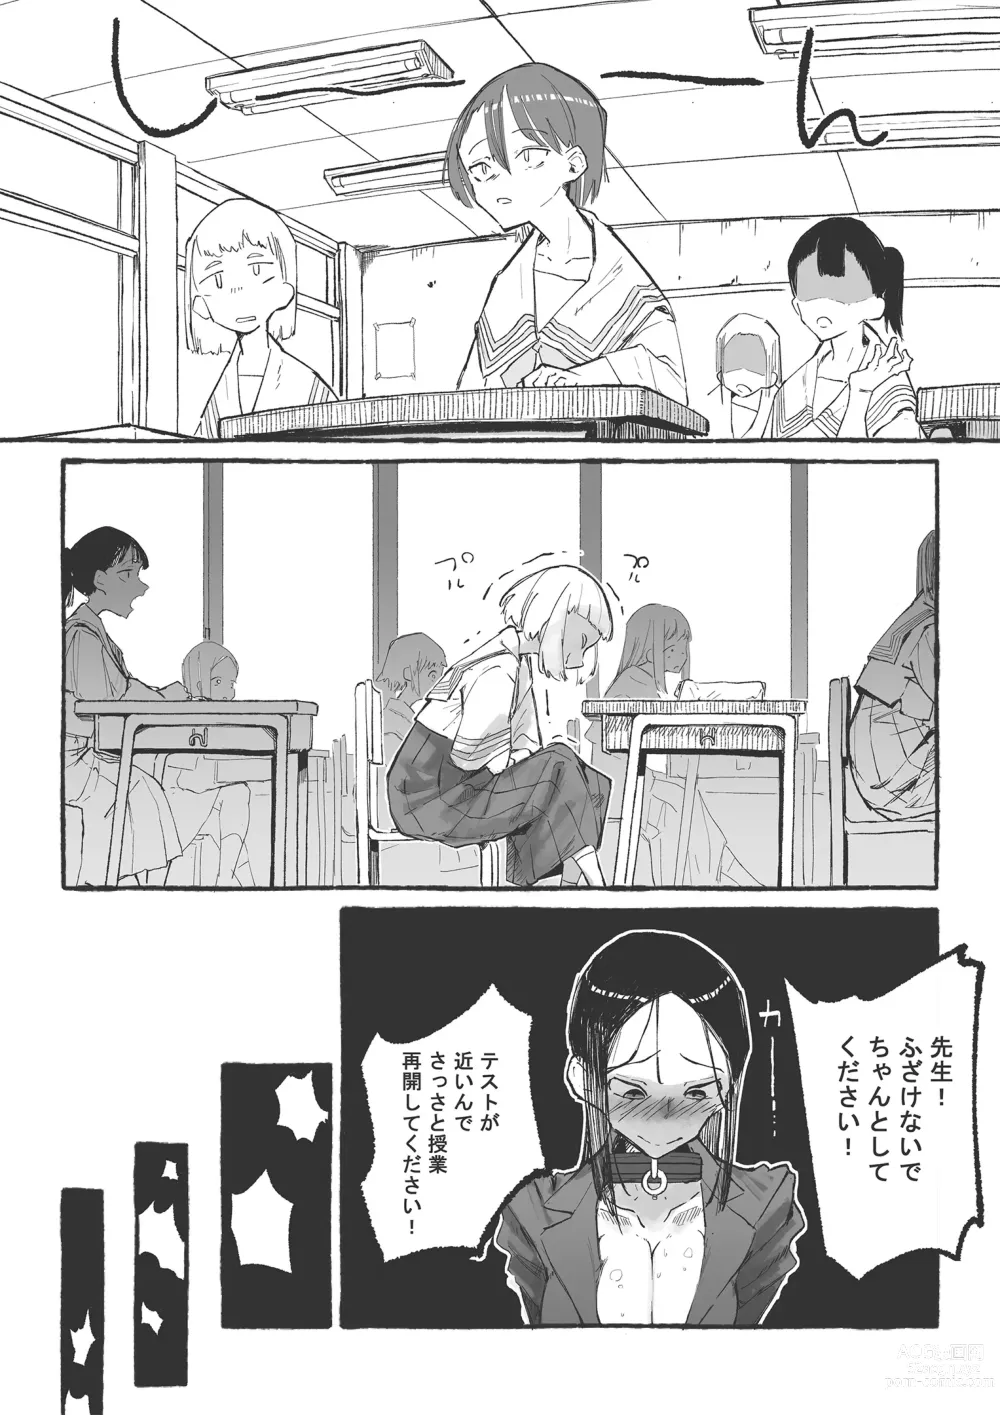 Page 6 of doujinshi Baske-bu no Shinmai Kyoushi Ijime2